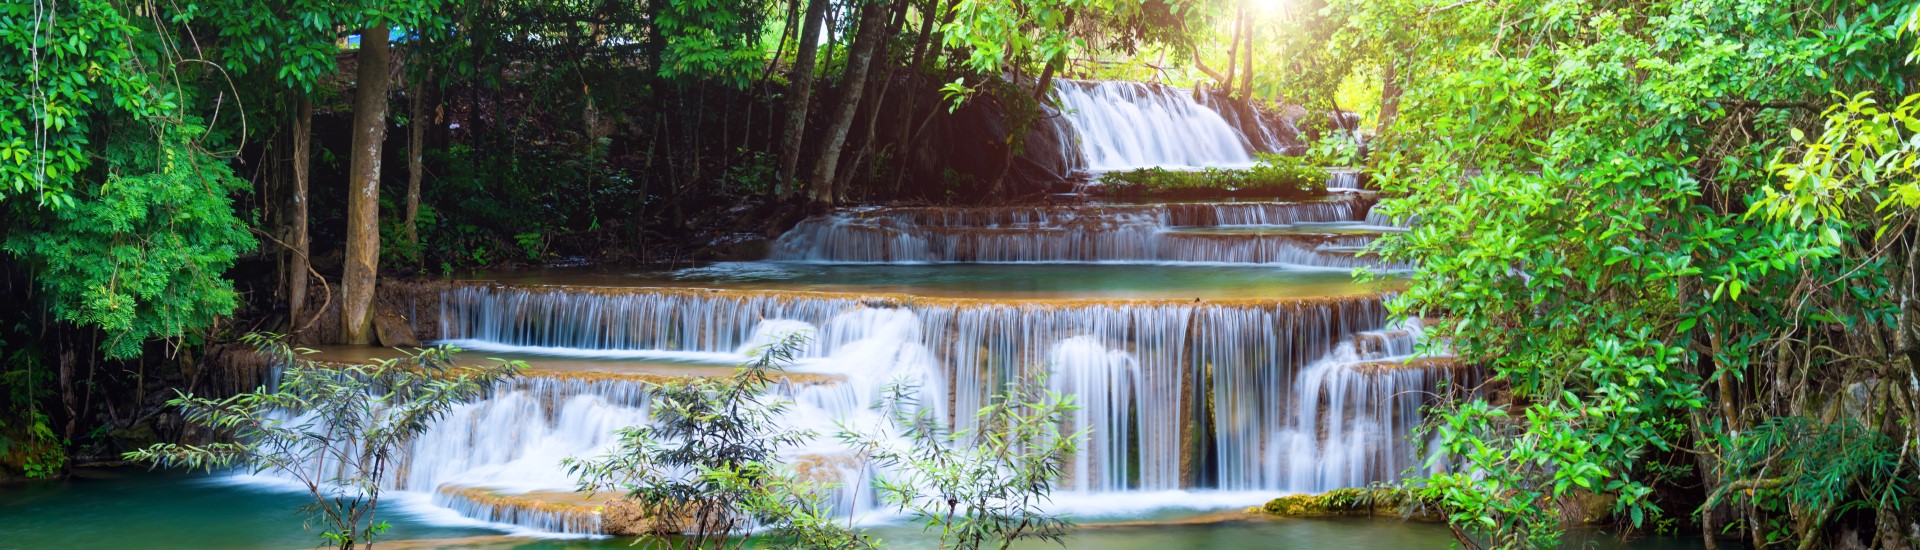 Kanchanaburi, Thailand - Huai Mae Kamin waterfall